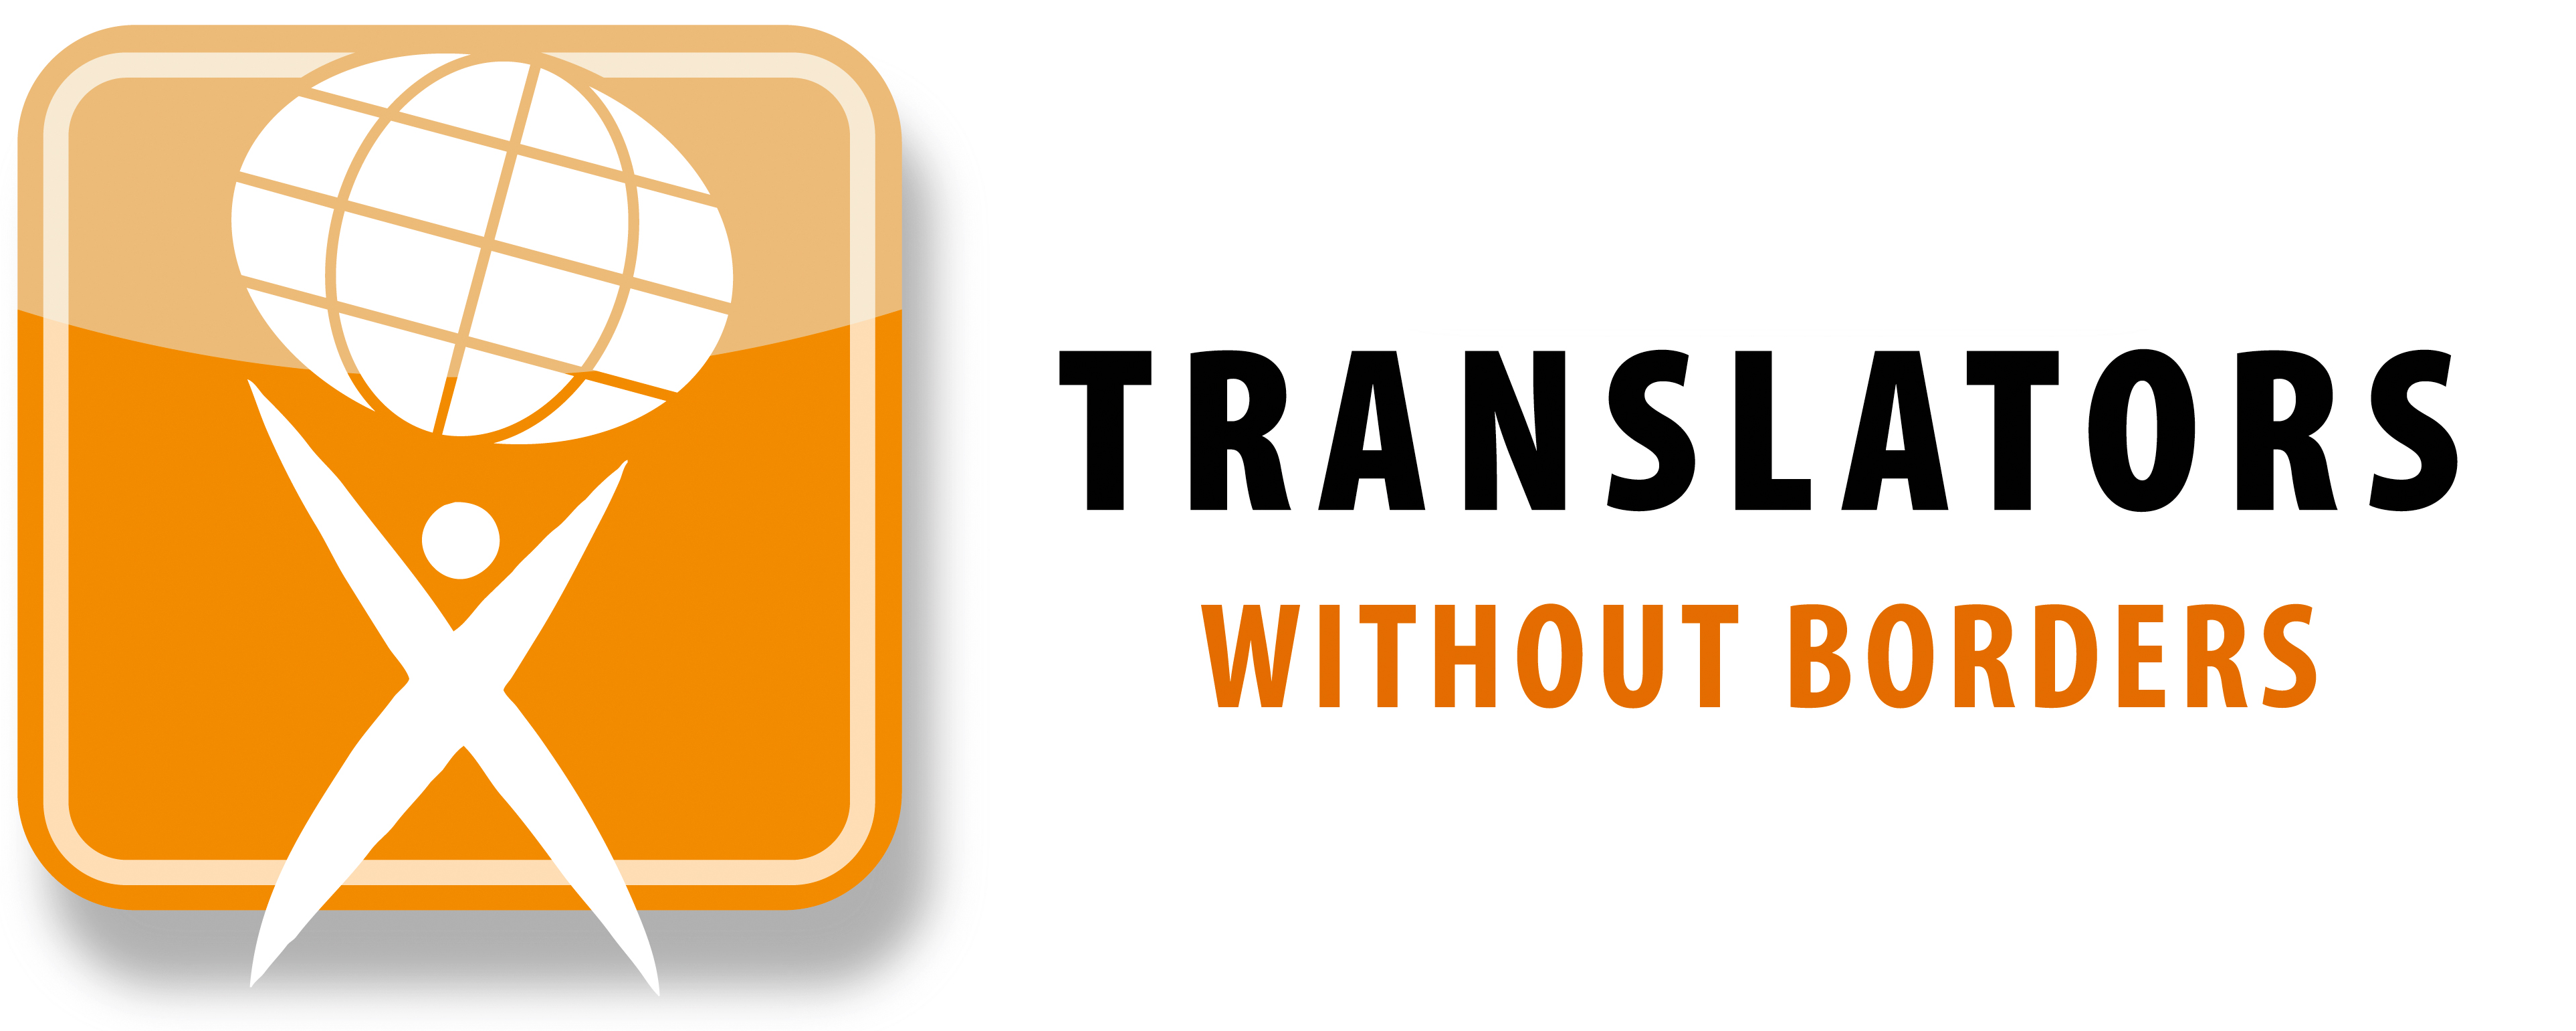 Translators Without Borders Logo Horizontal 1